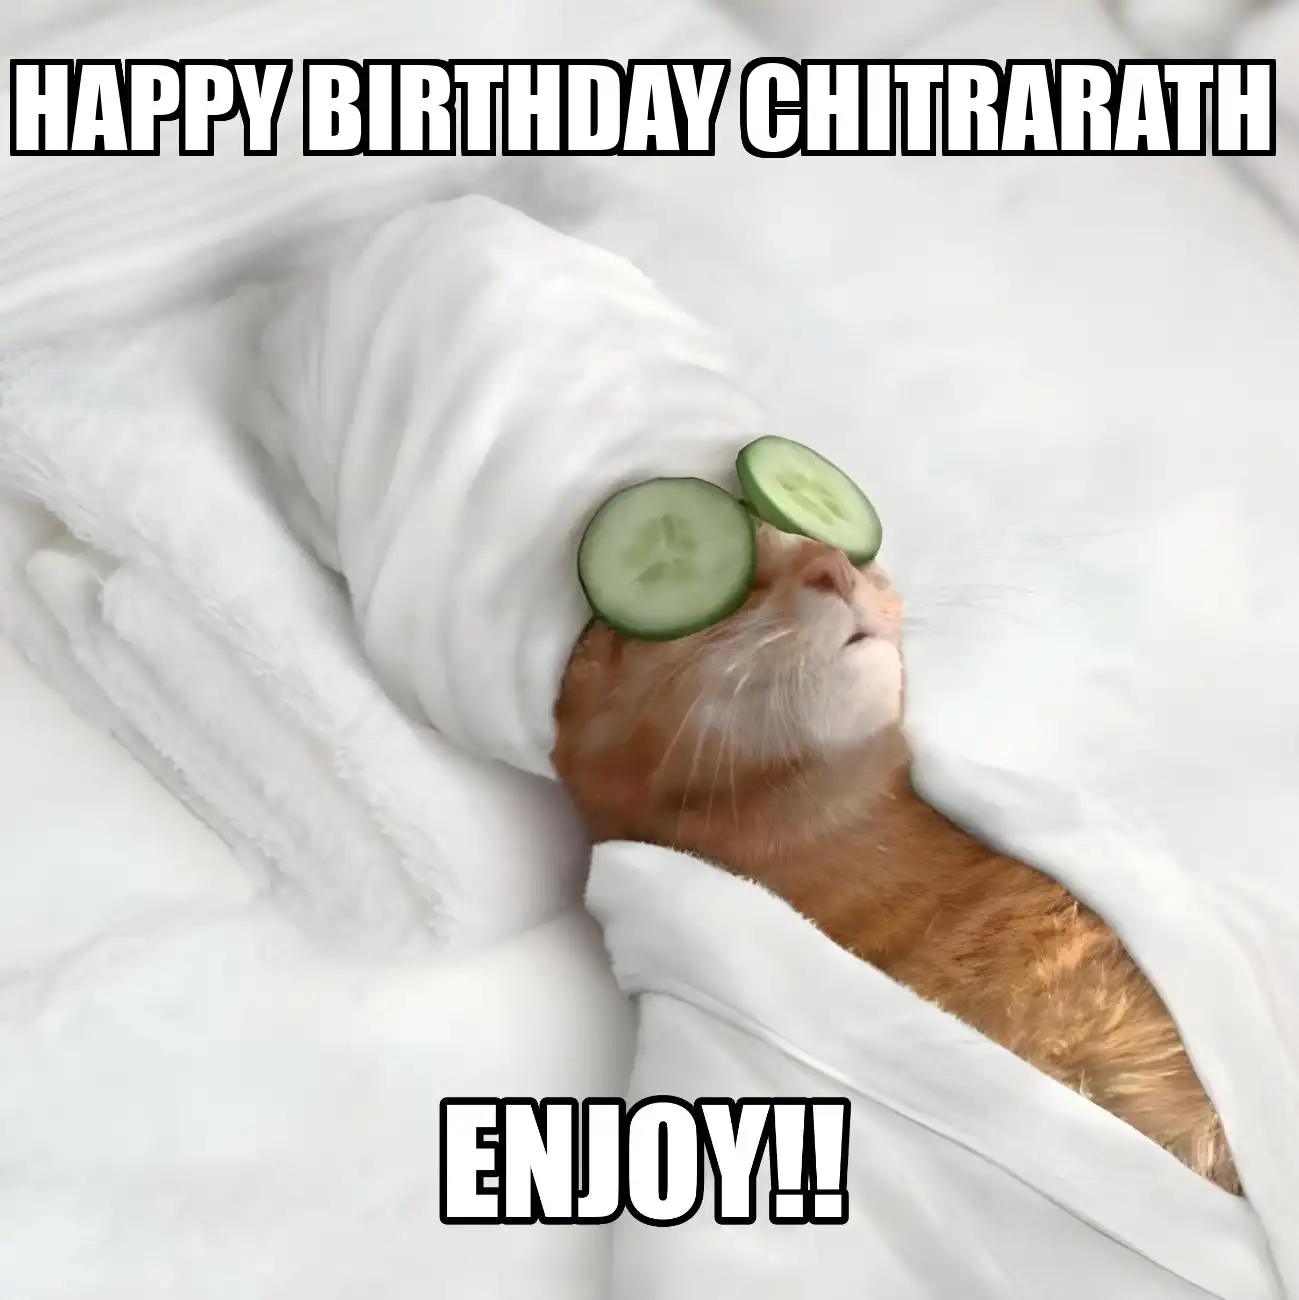 Happy Birthday Chitrarath Enjoy Cat Meme